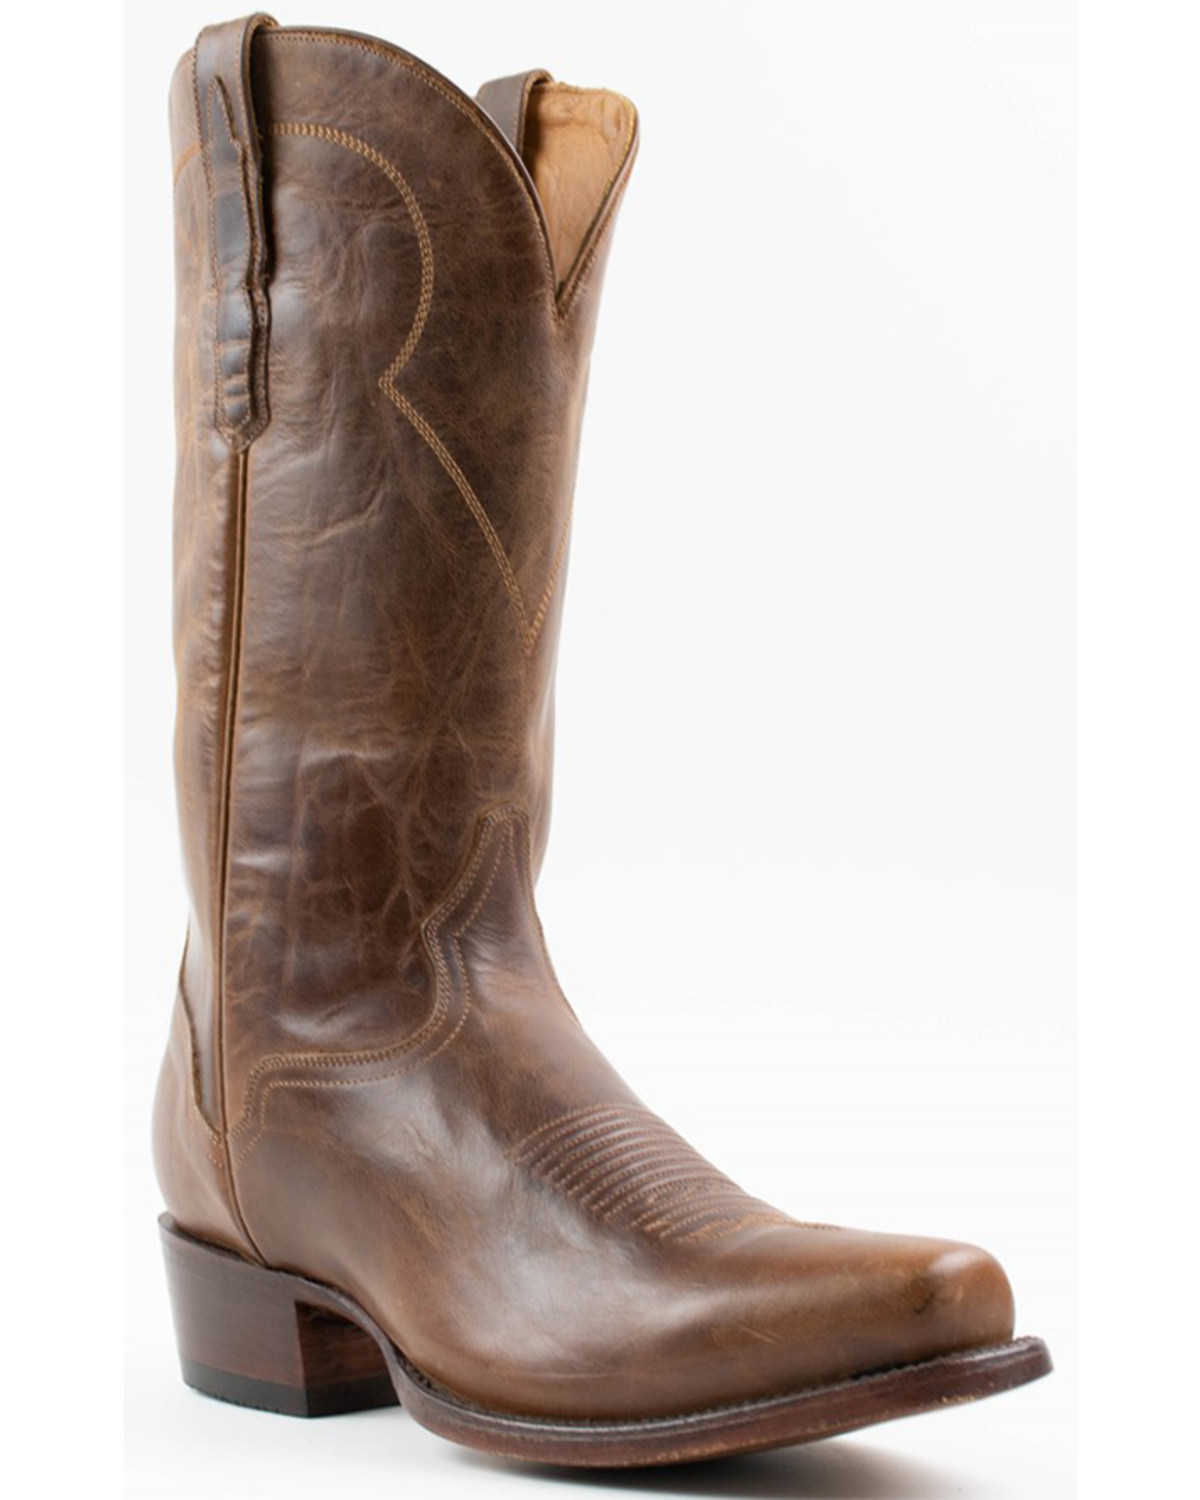 El Dorado Men's 13" Distressed Western Boots